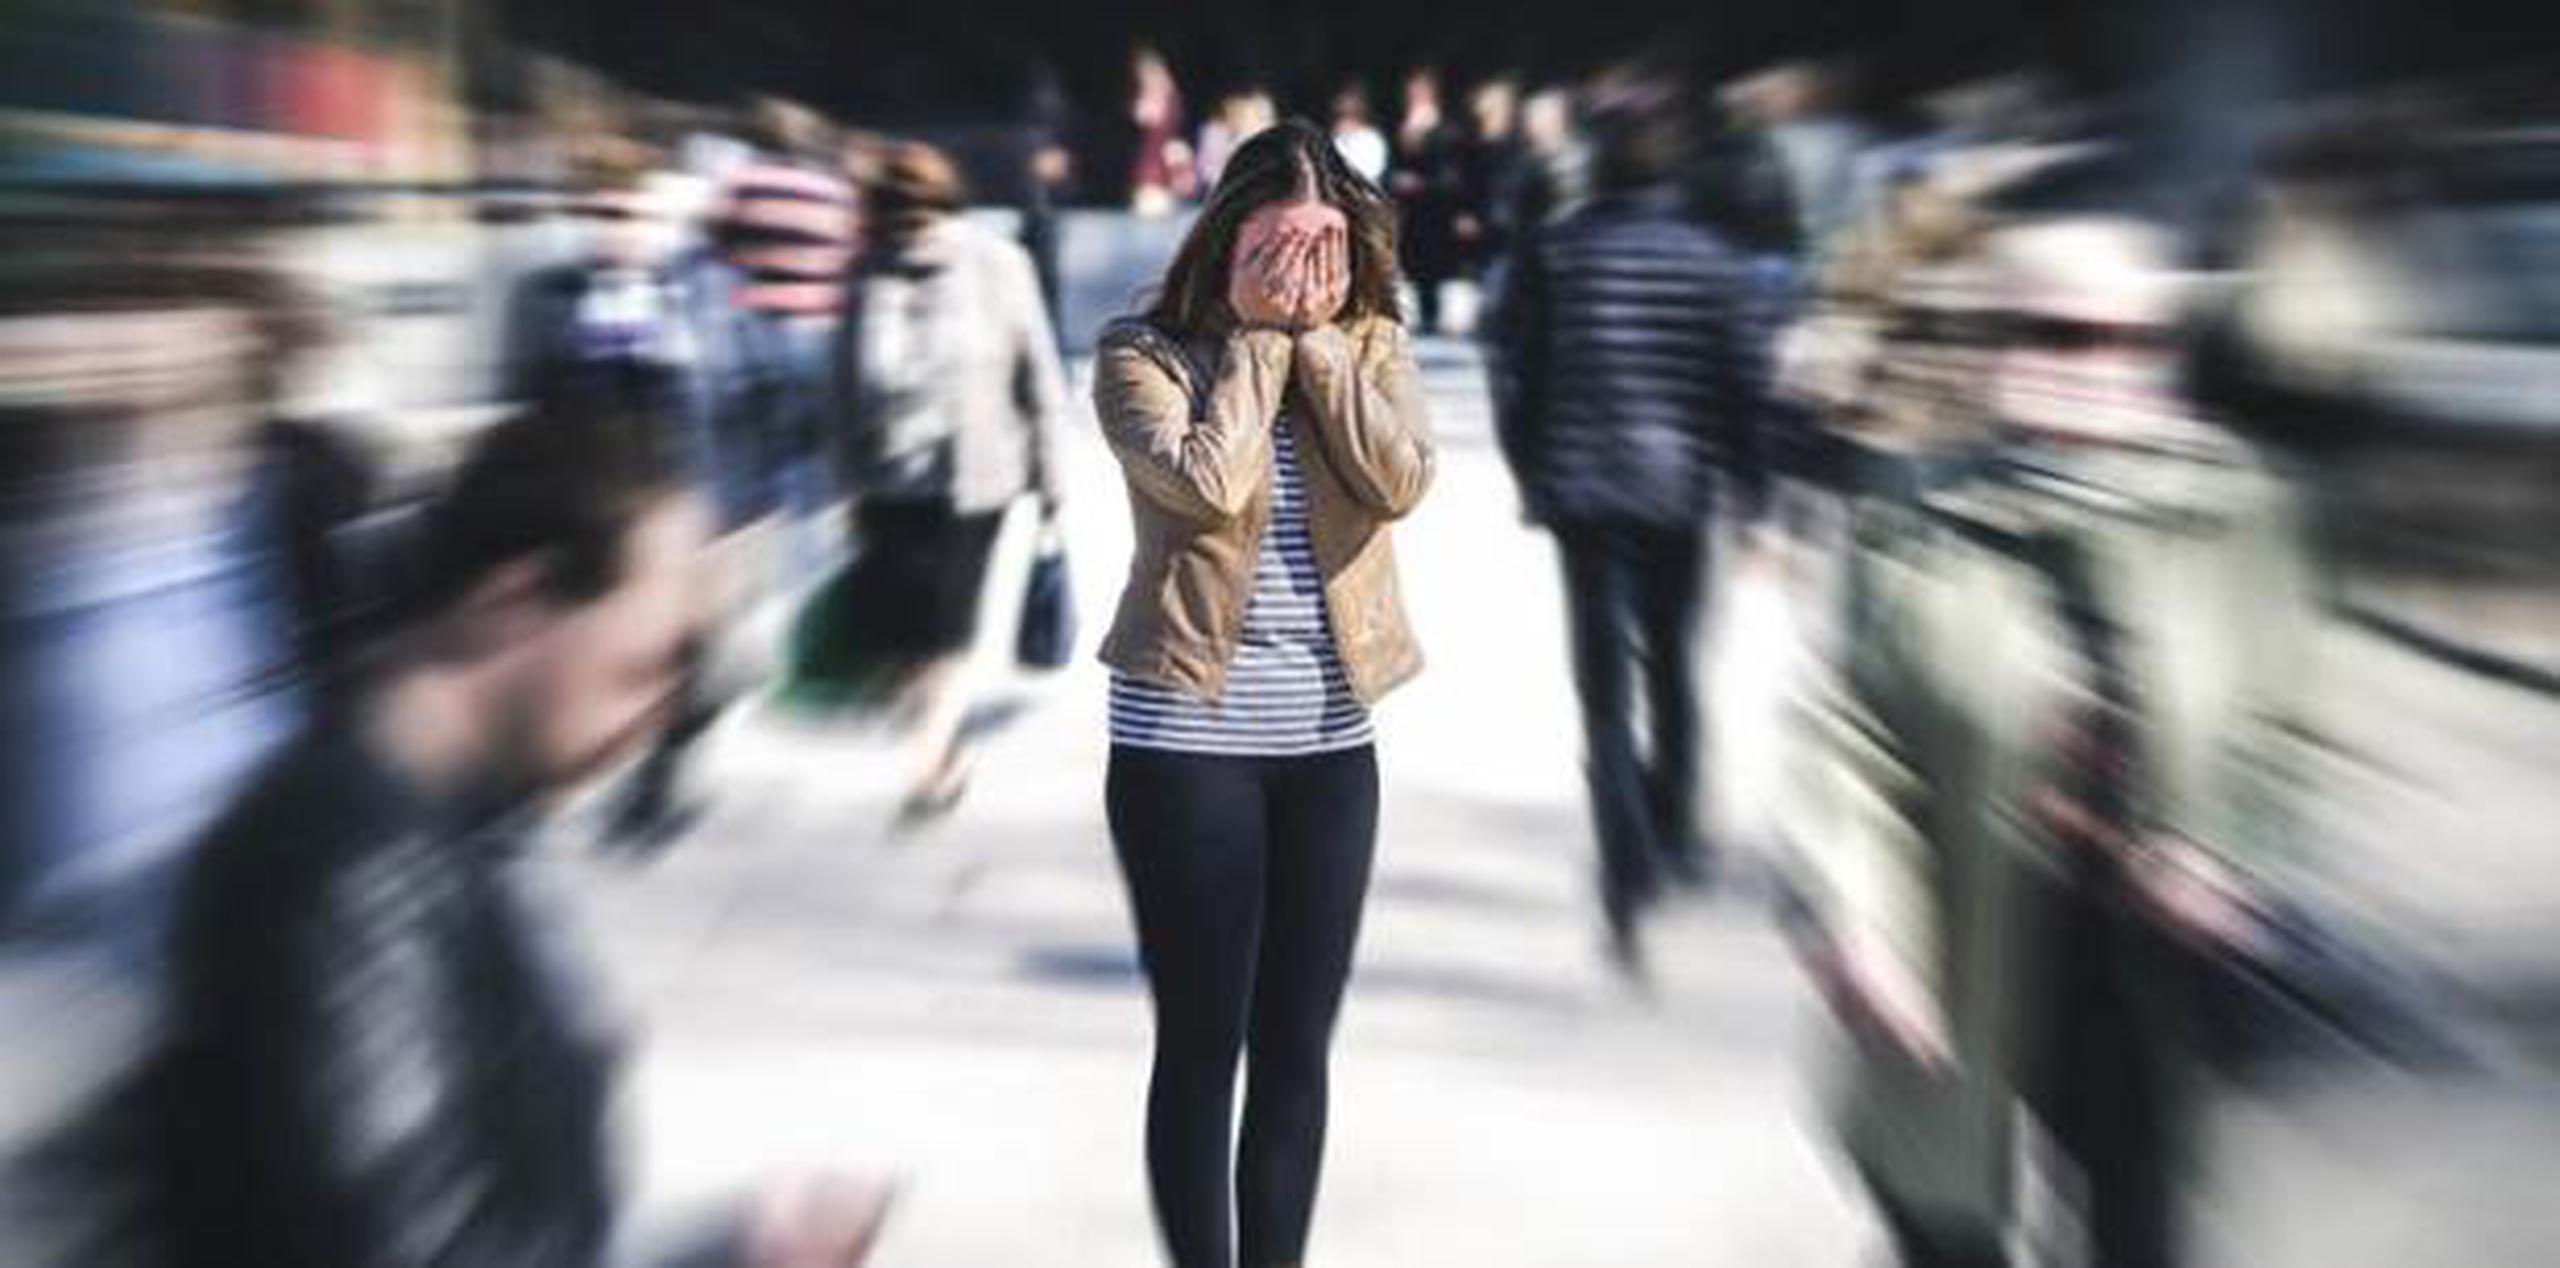 Las mujeres tienen el doble de posibilidades de padecer trastorno de ansiedad en comparación con los hombres. (Shutterstock)